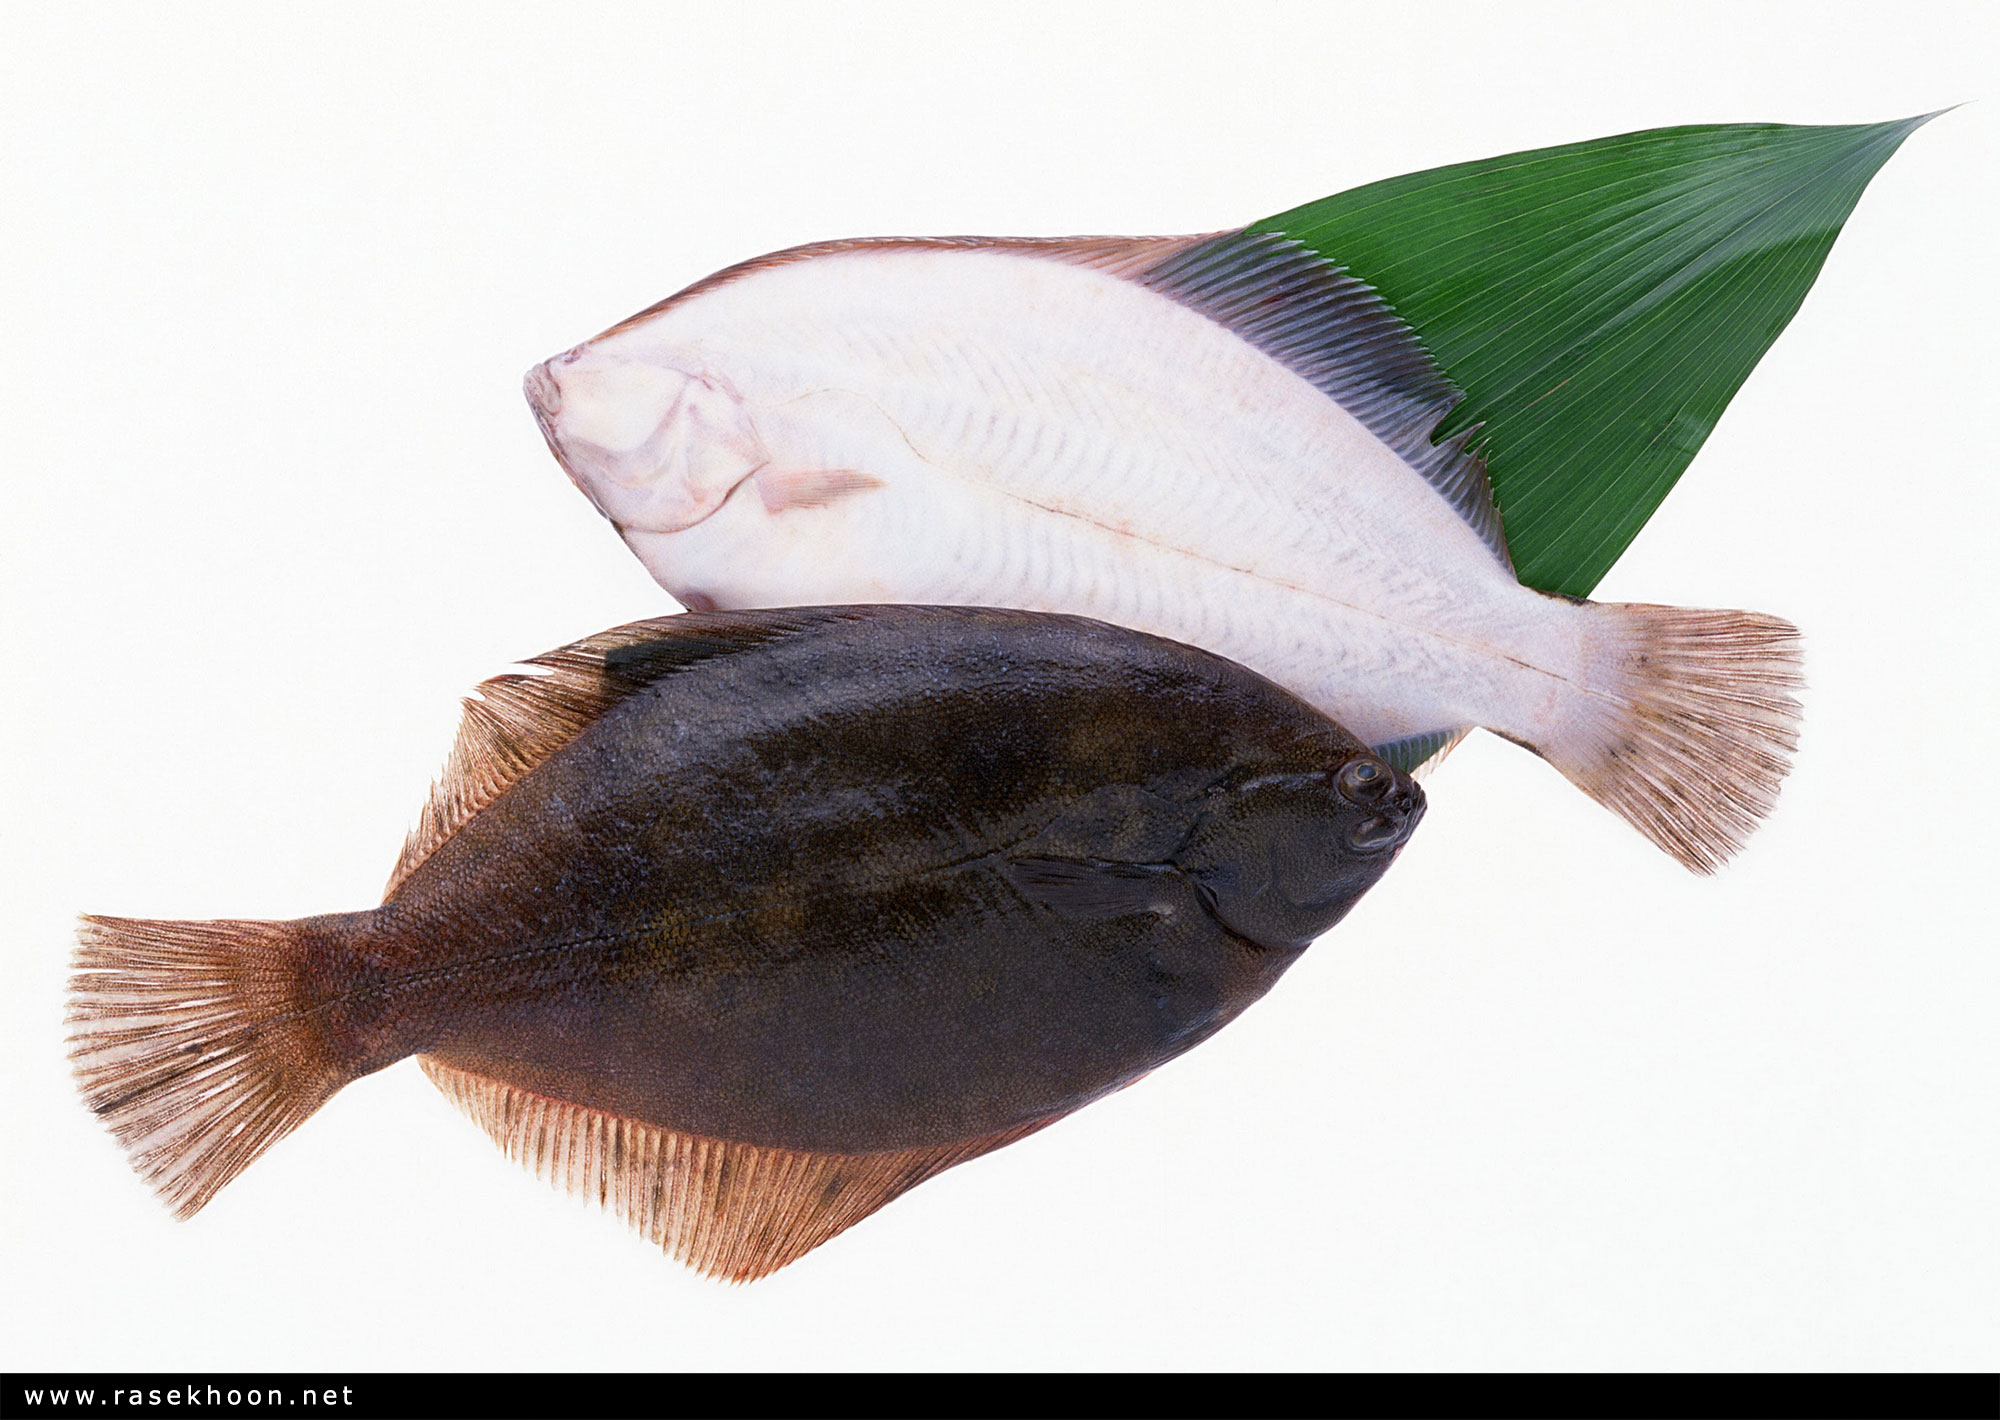 Как выглядит масляная рыба фото с головой